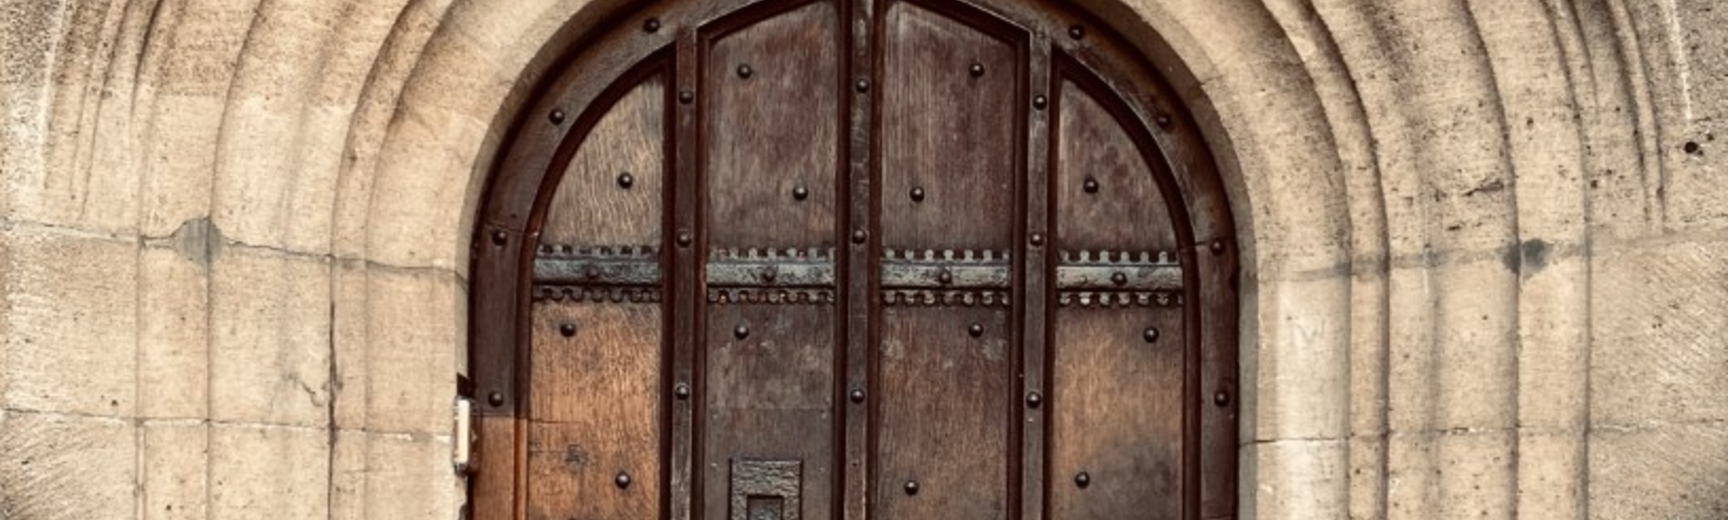 saoud al khuzaei  doorway to enlightenment